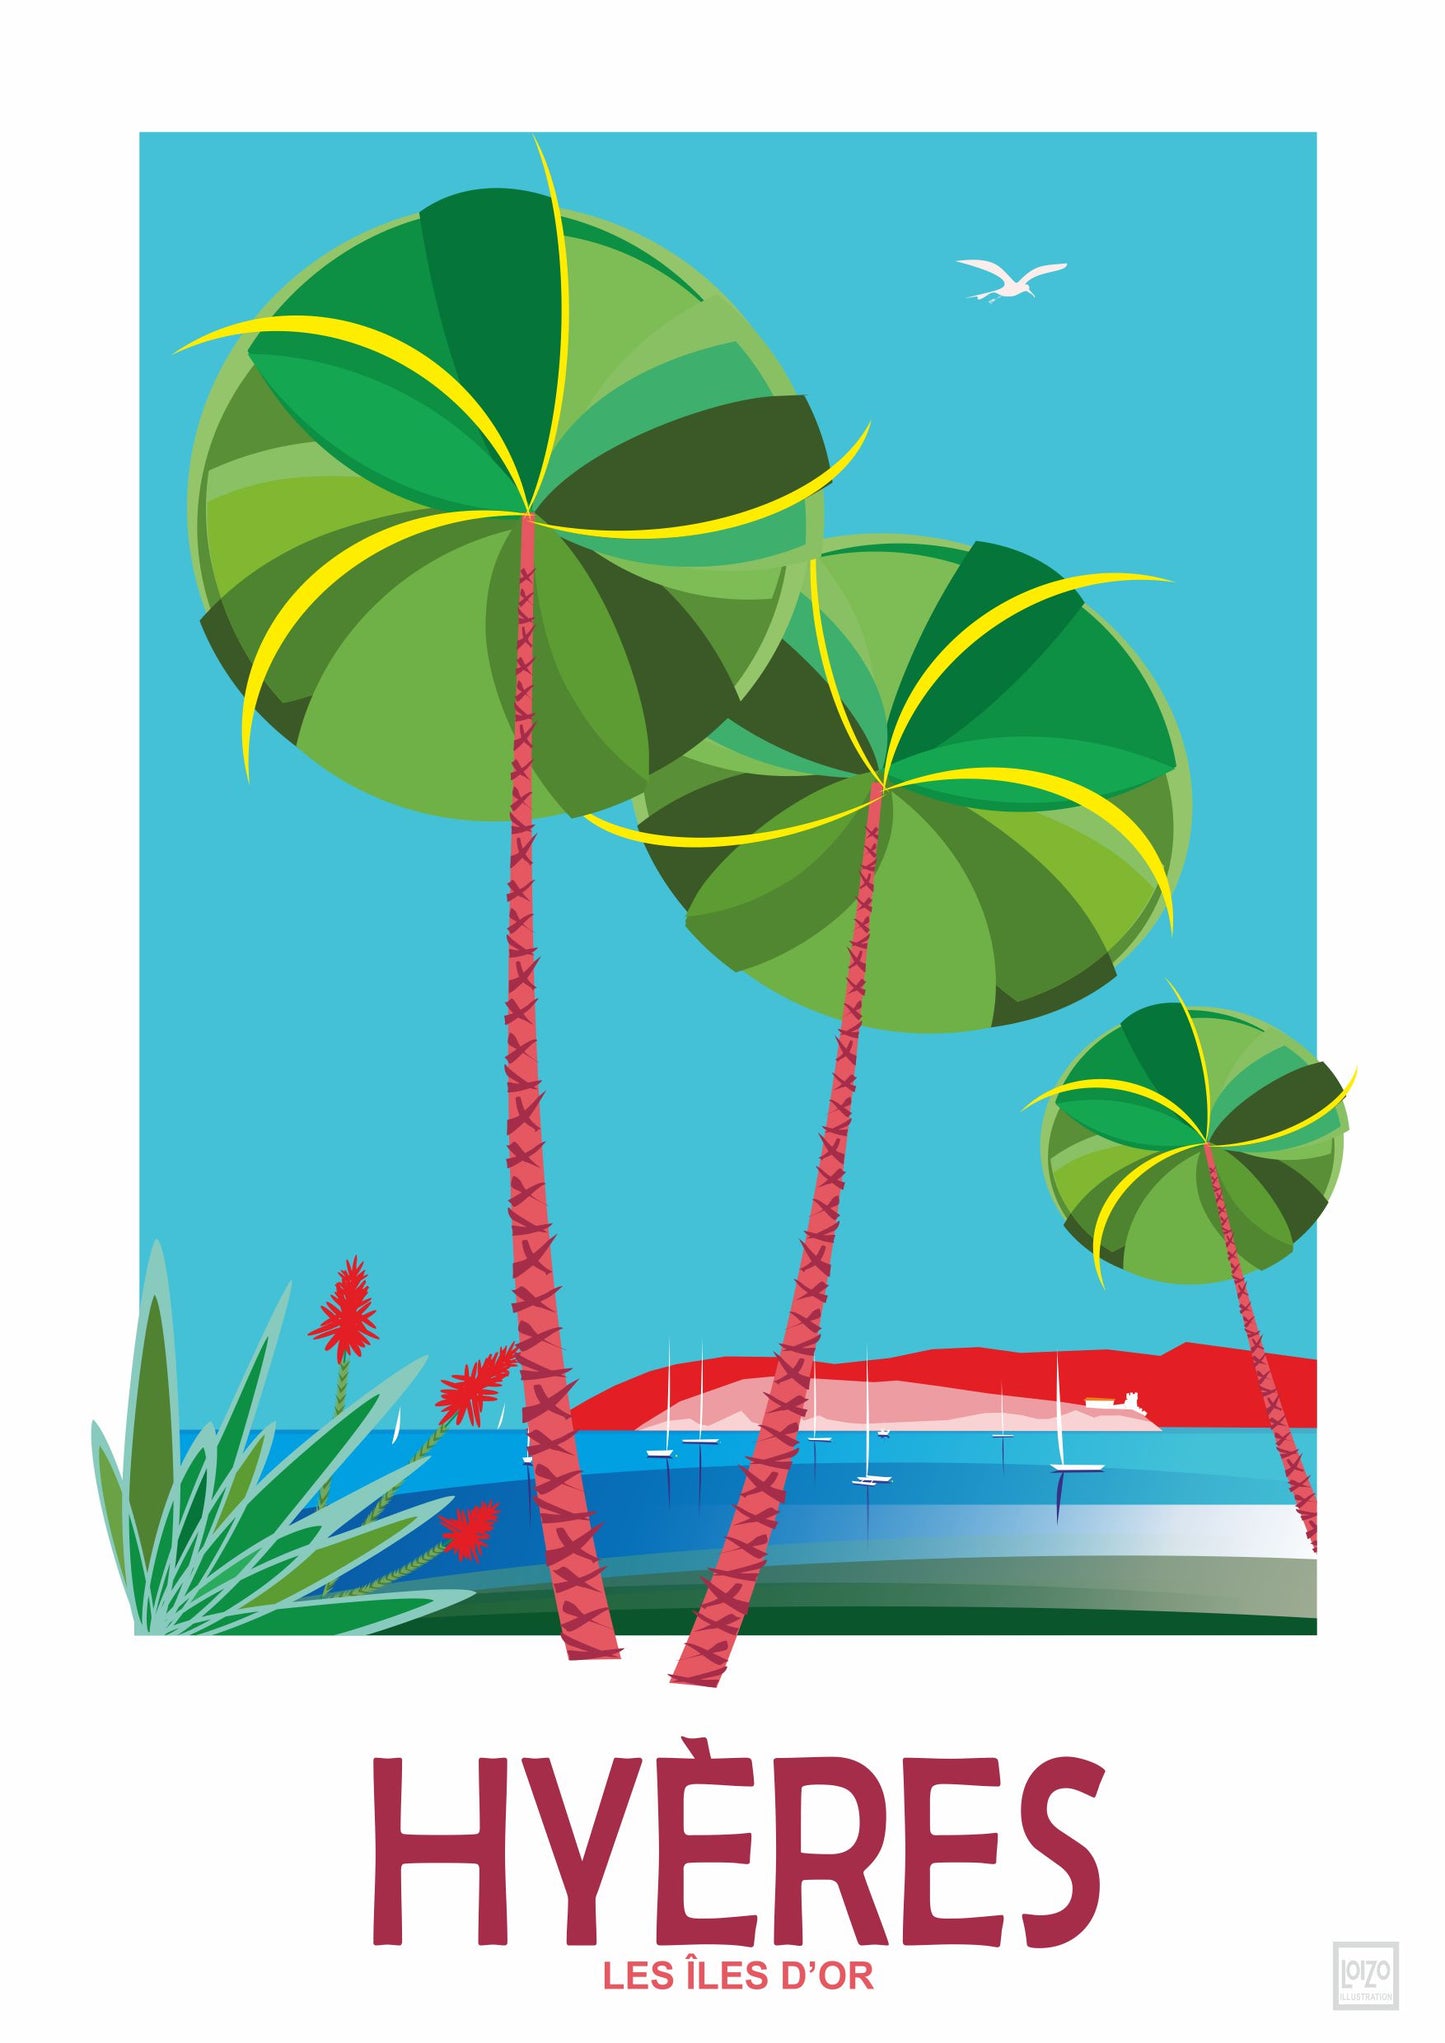 Hyères les palmiers  "les Iles d'or" loizo illustration